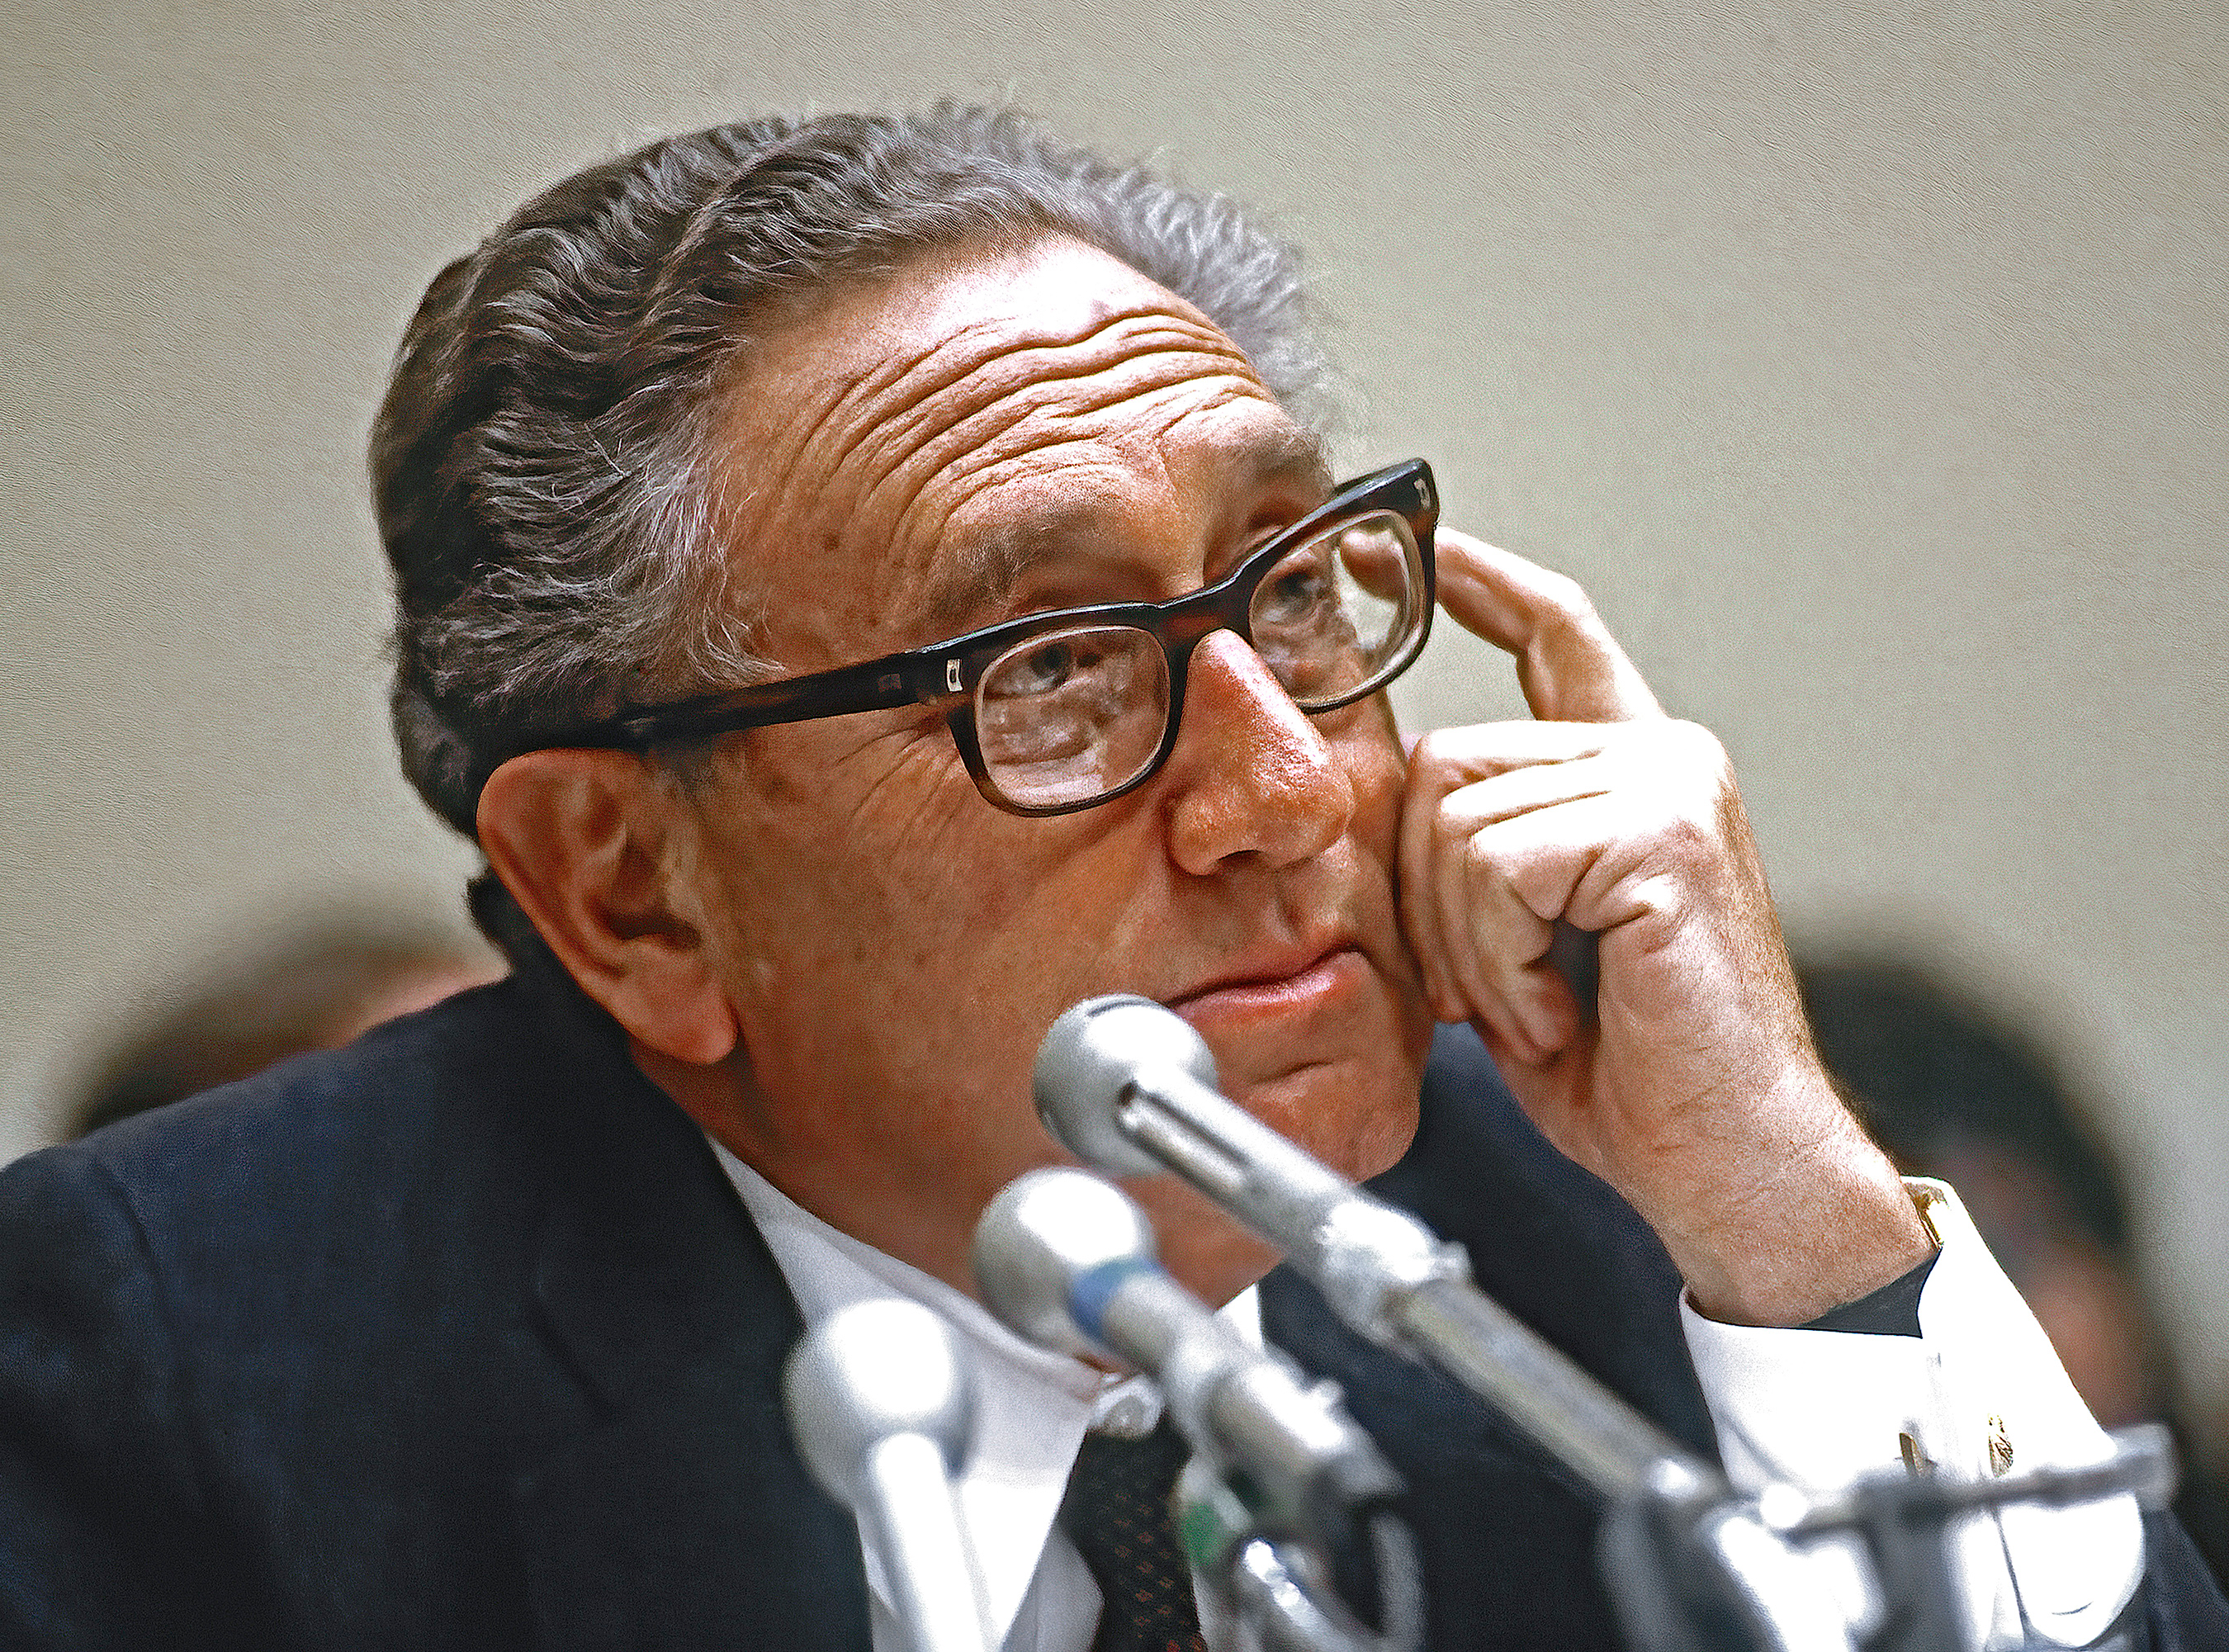 Kissinger at 100